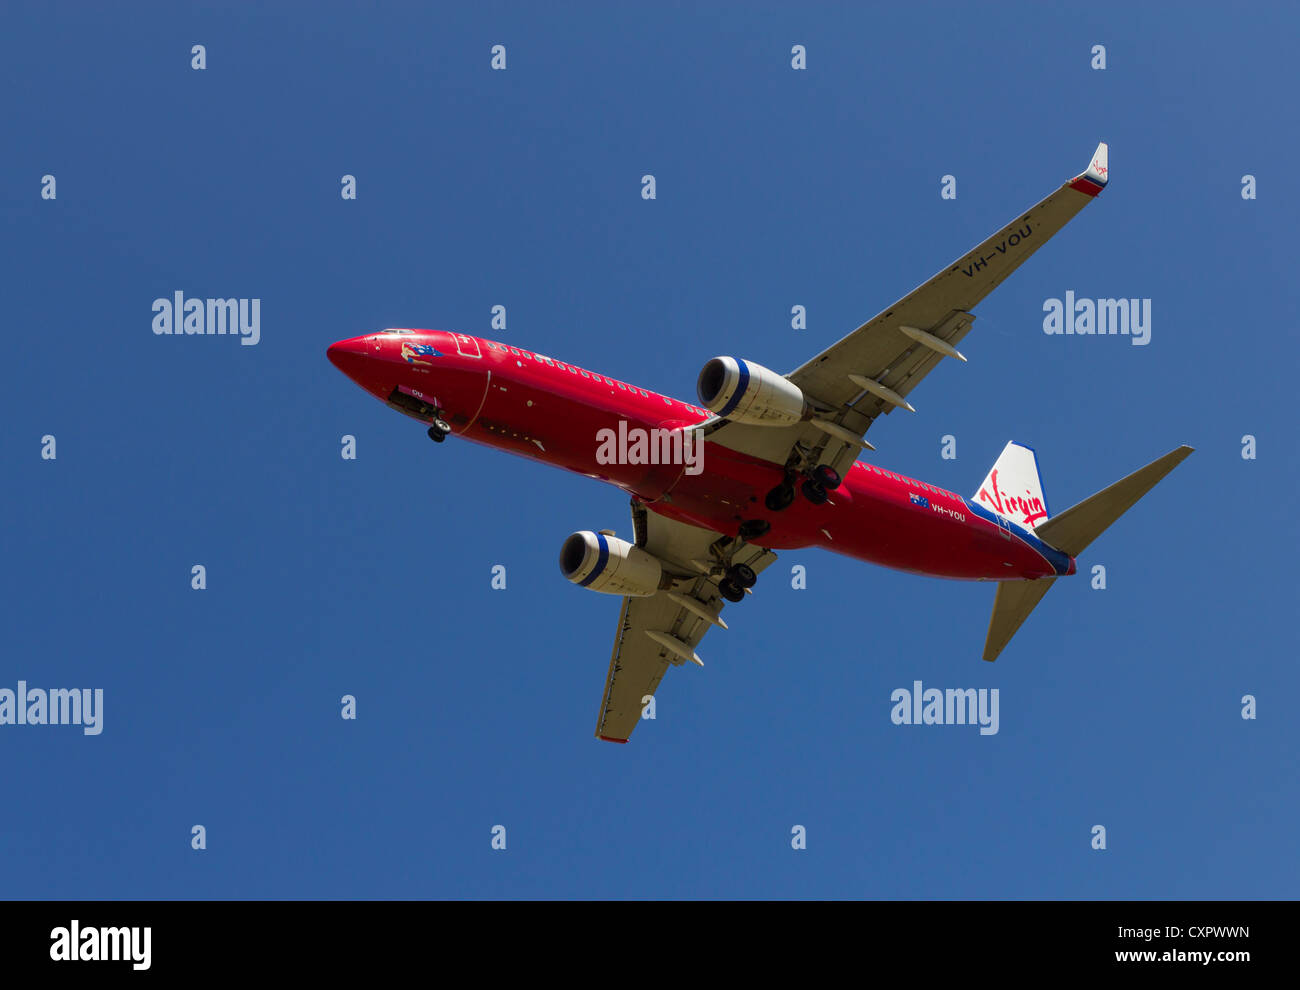 Virgin Australia passenger jet on landing approach Stock Photo